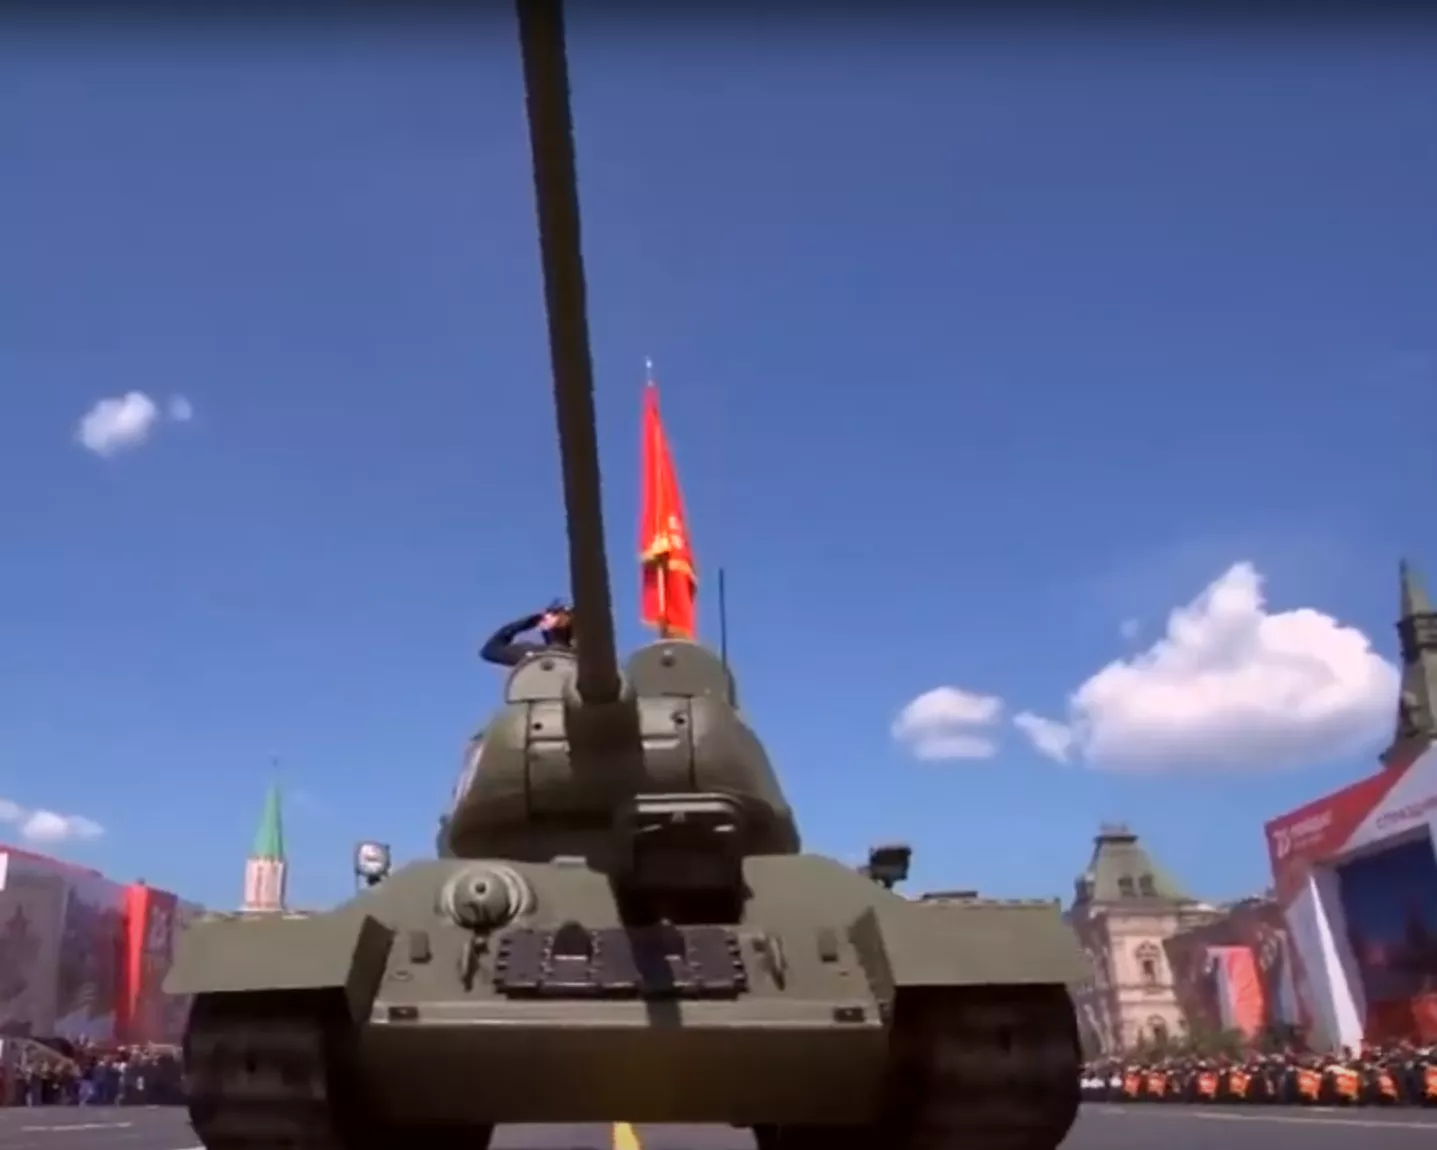 Парад техники каждый год начинается с "танка победы" Т-34